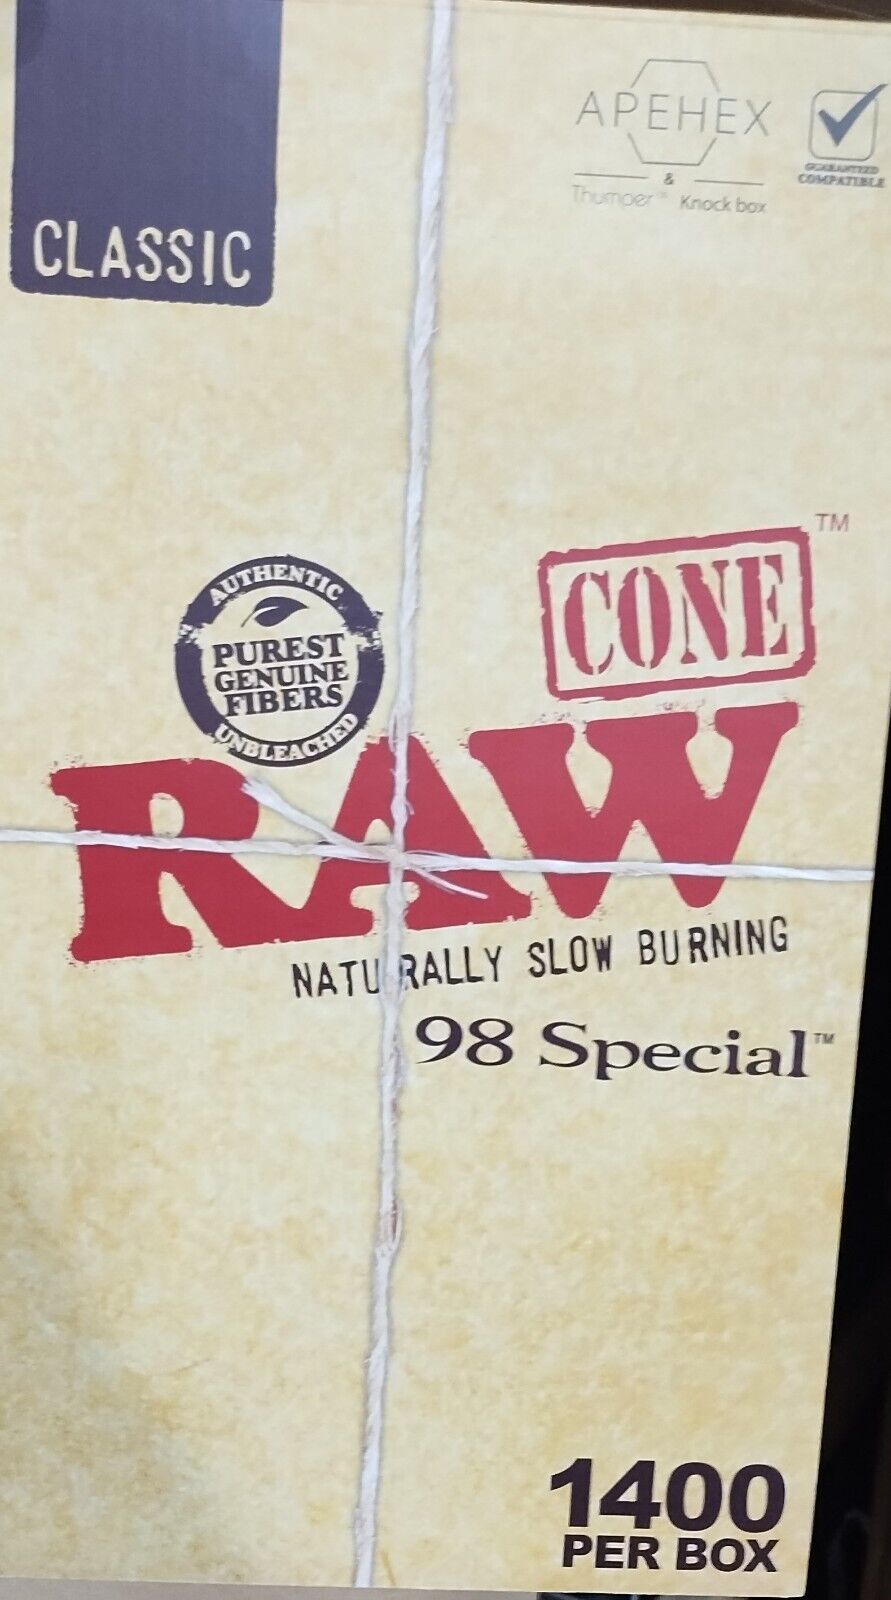 raw 98 special cones